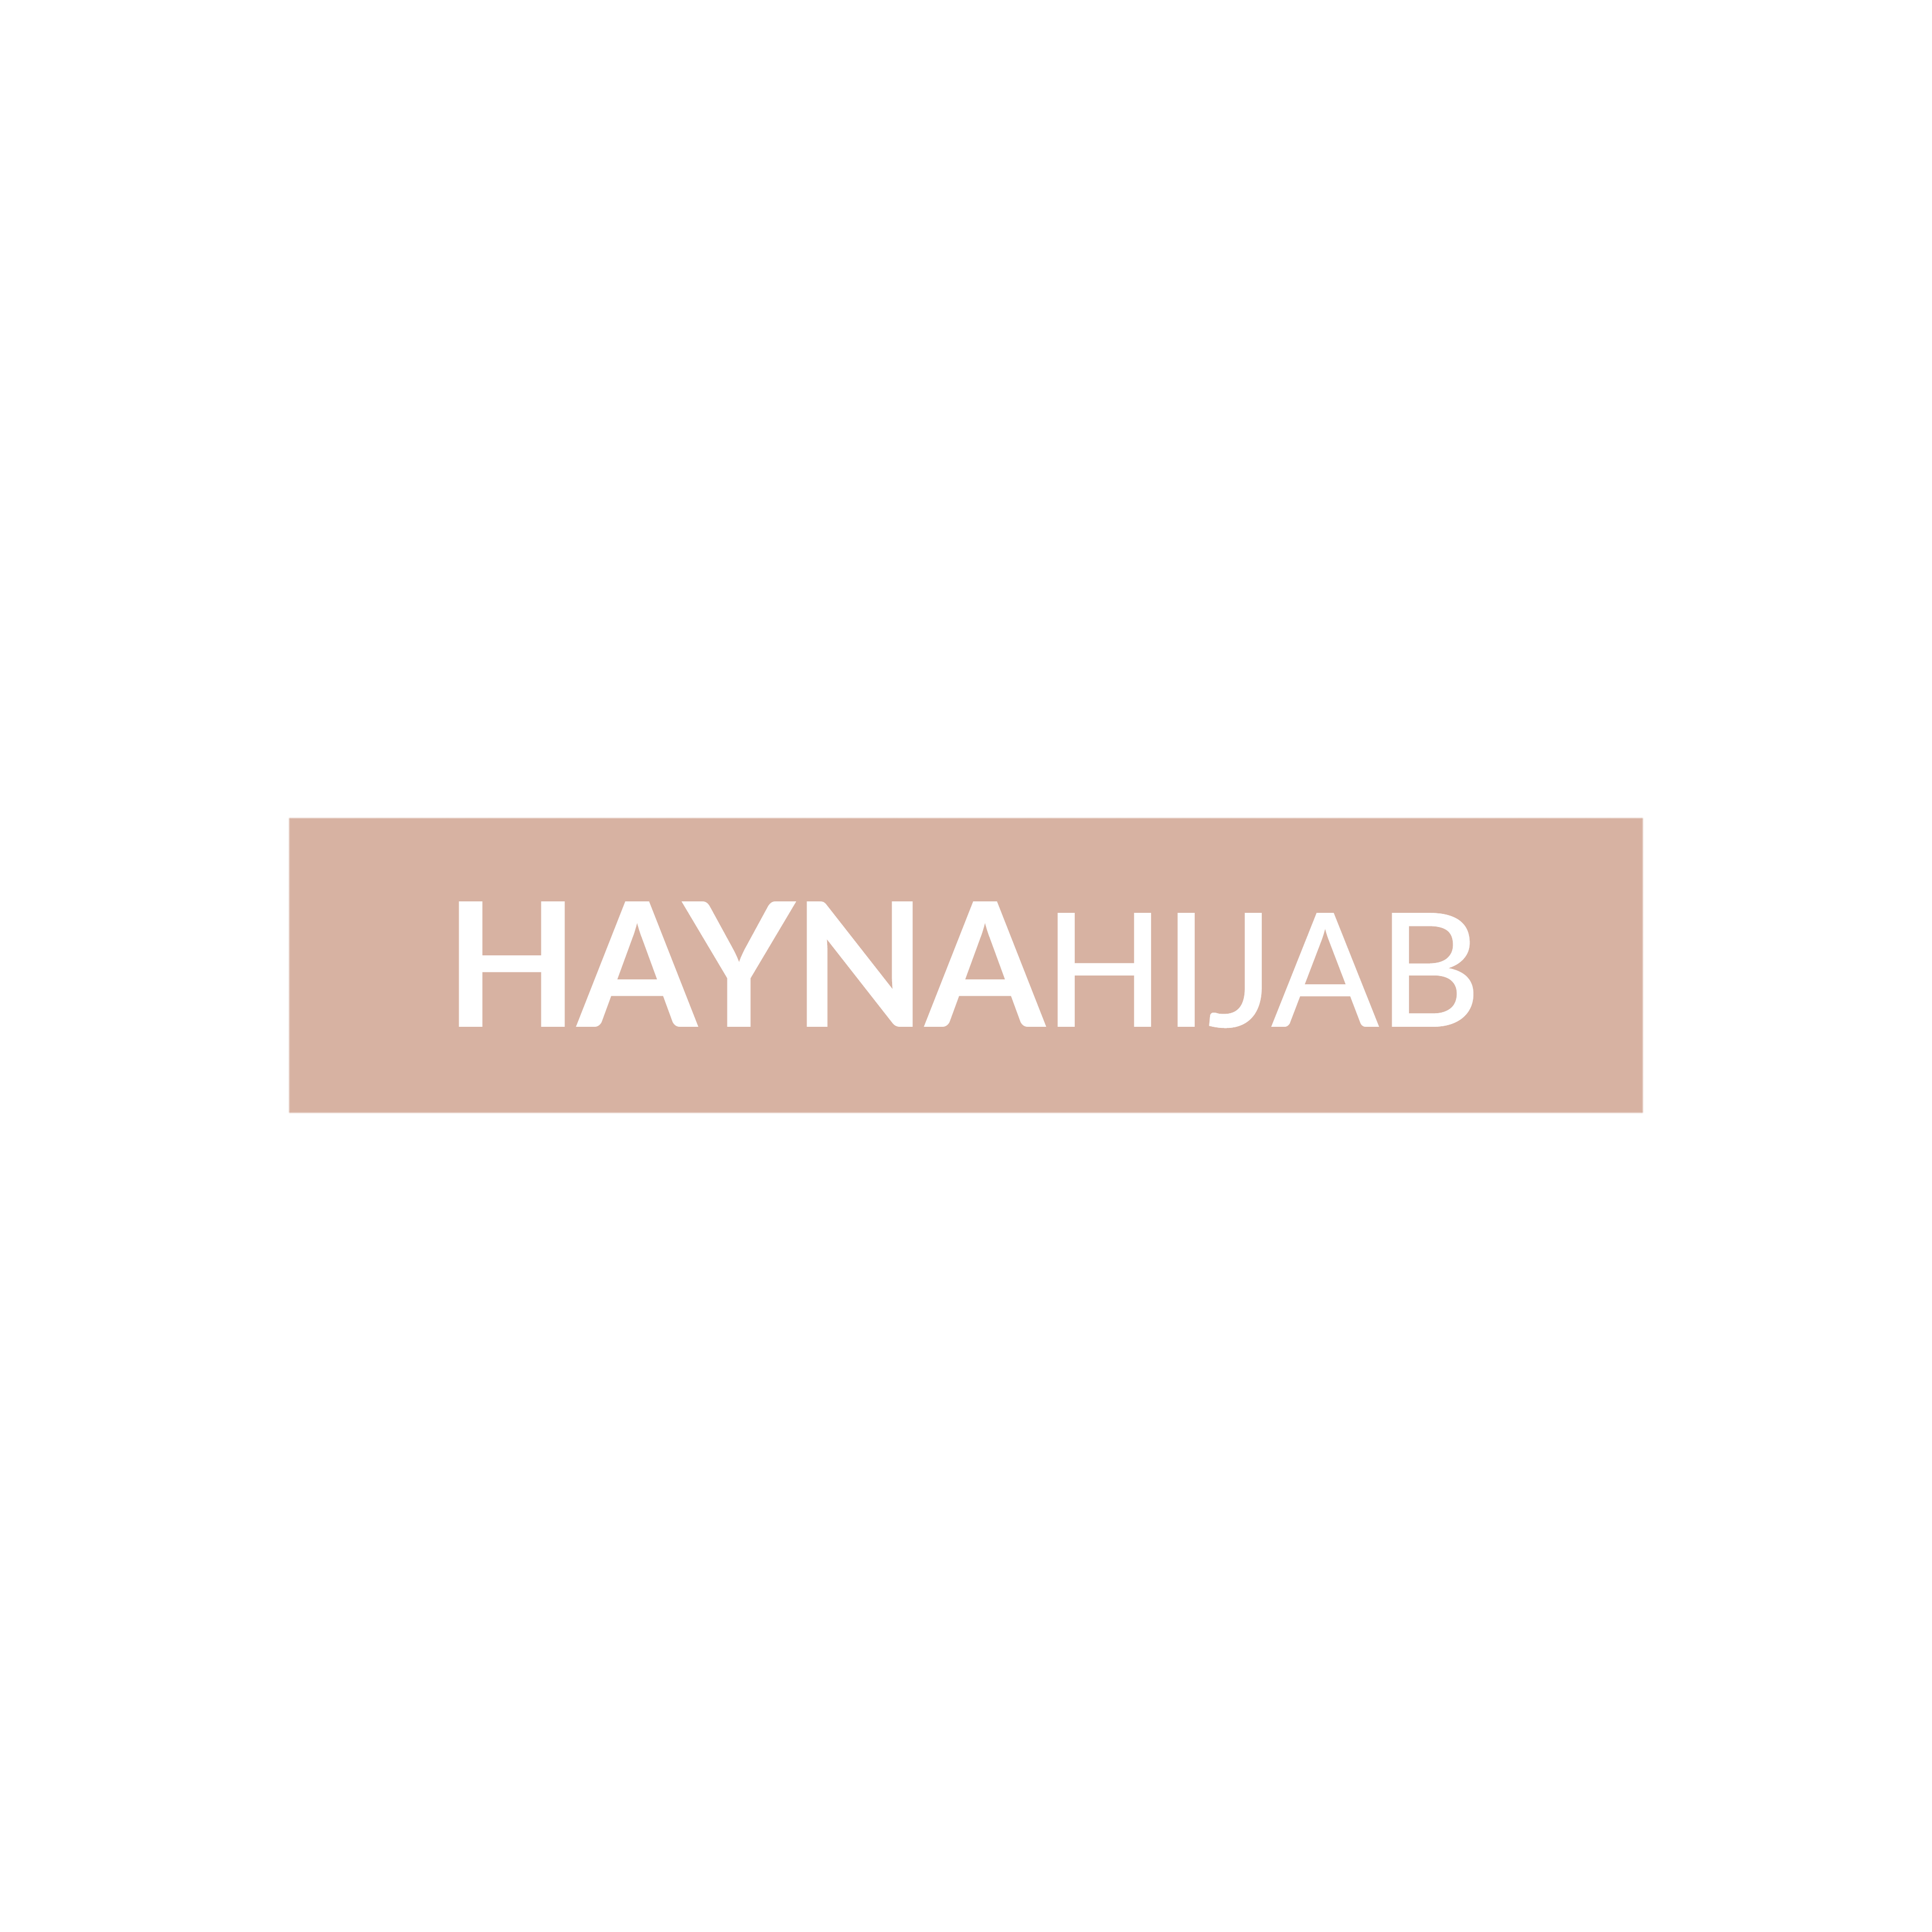 Haynahijab logo